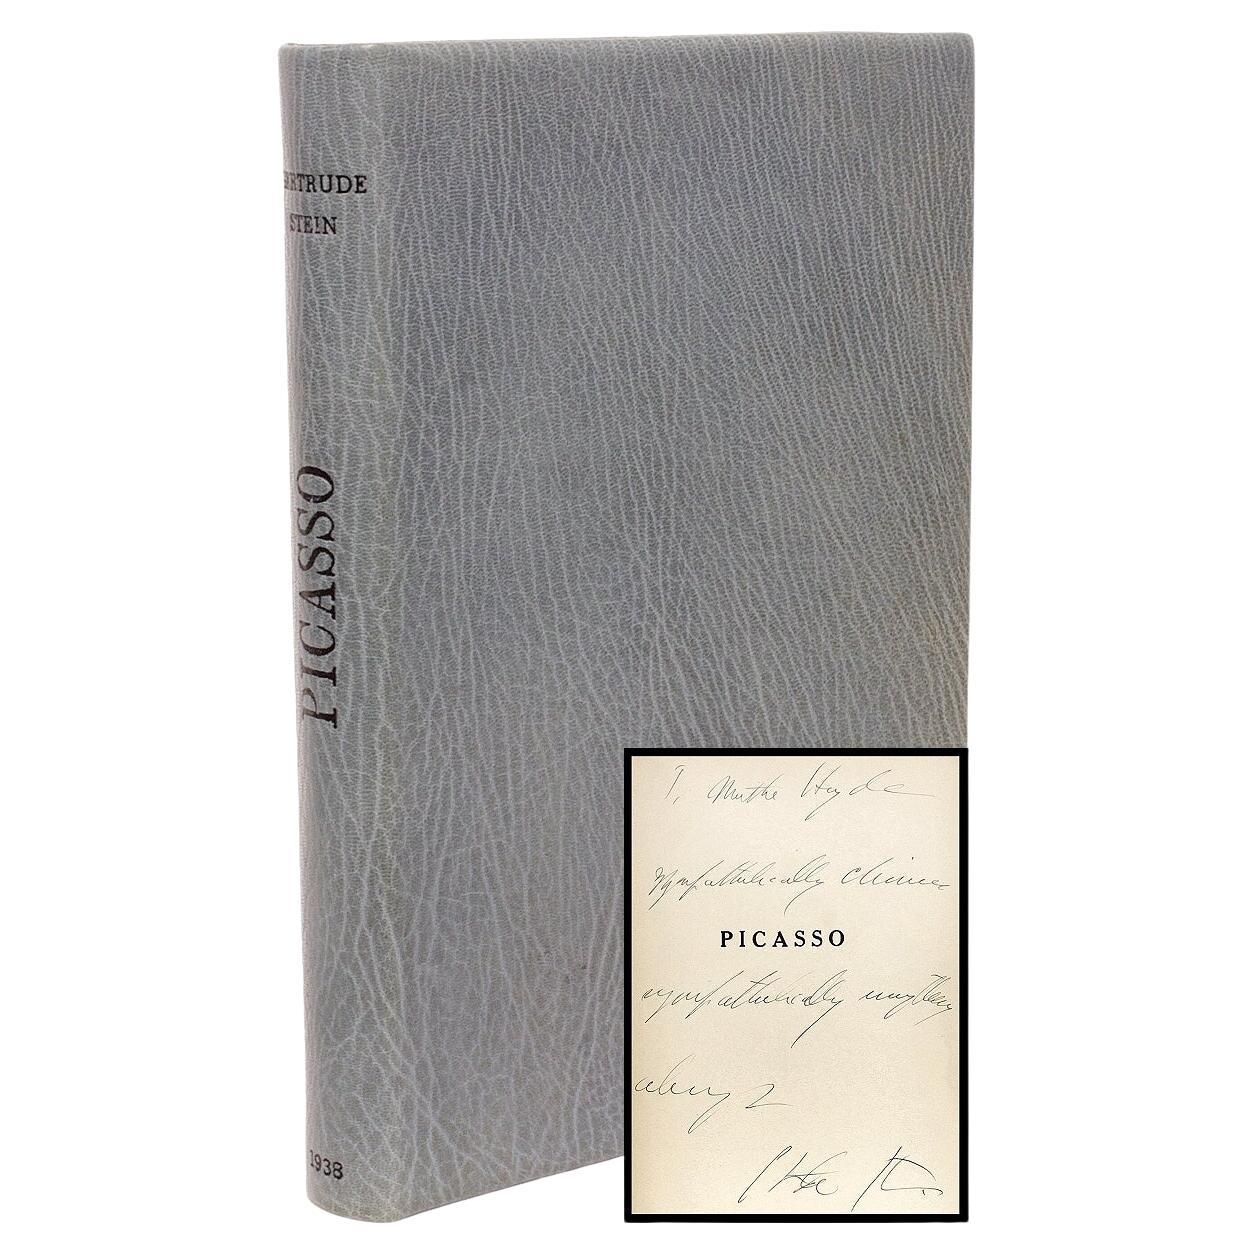 Gertrude Stein Anciens et Modernes Picasso, première édition de présentation, copie de présentation 1938